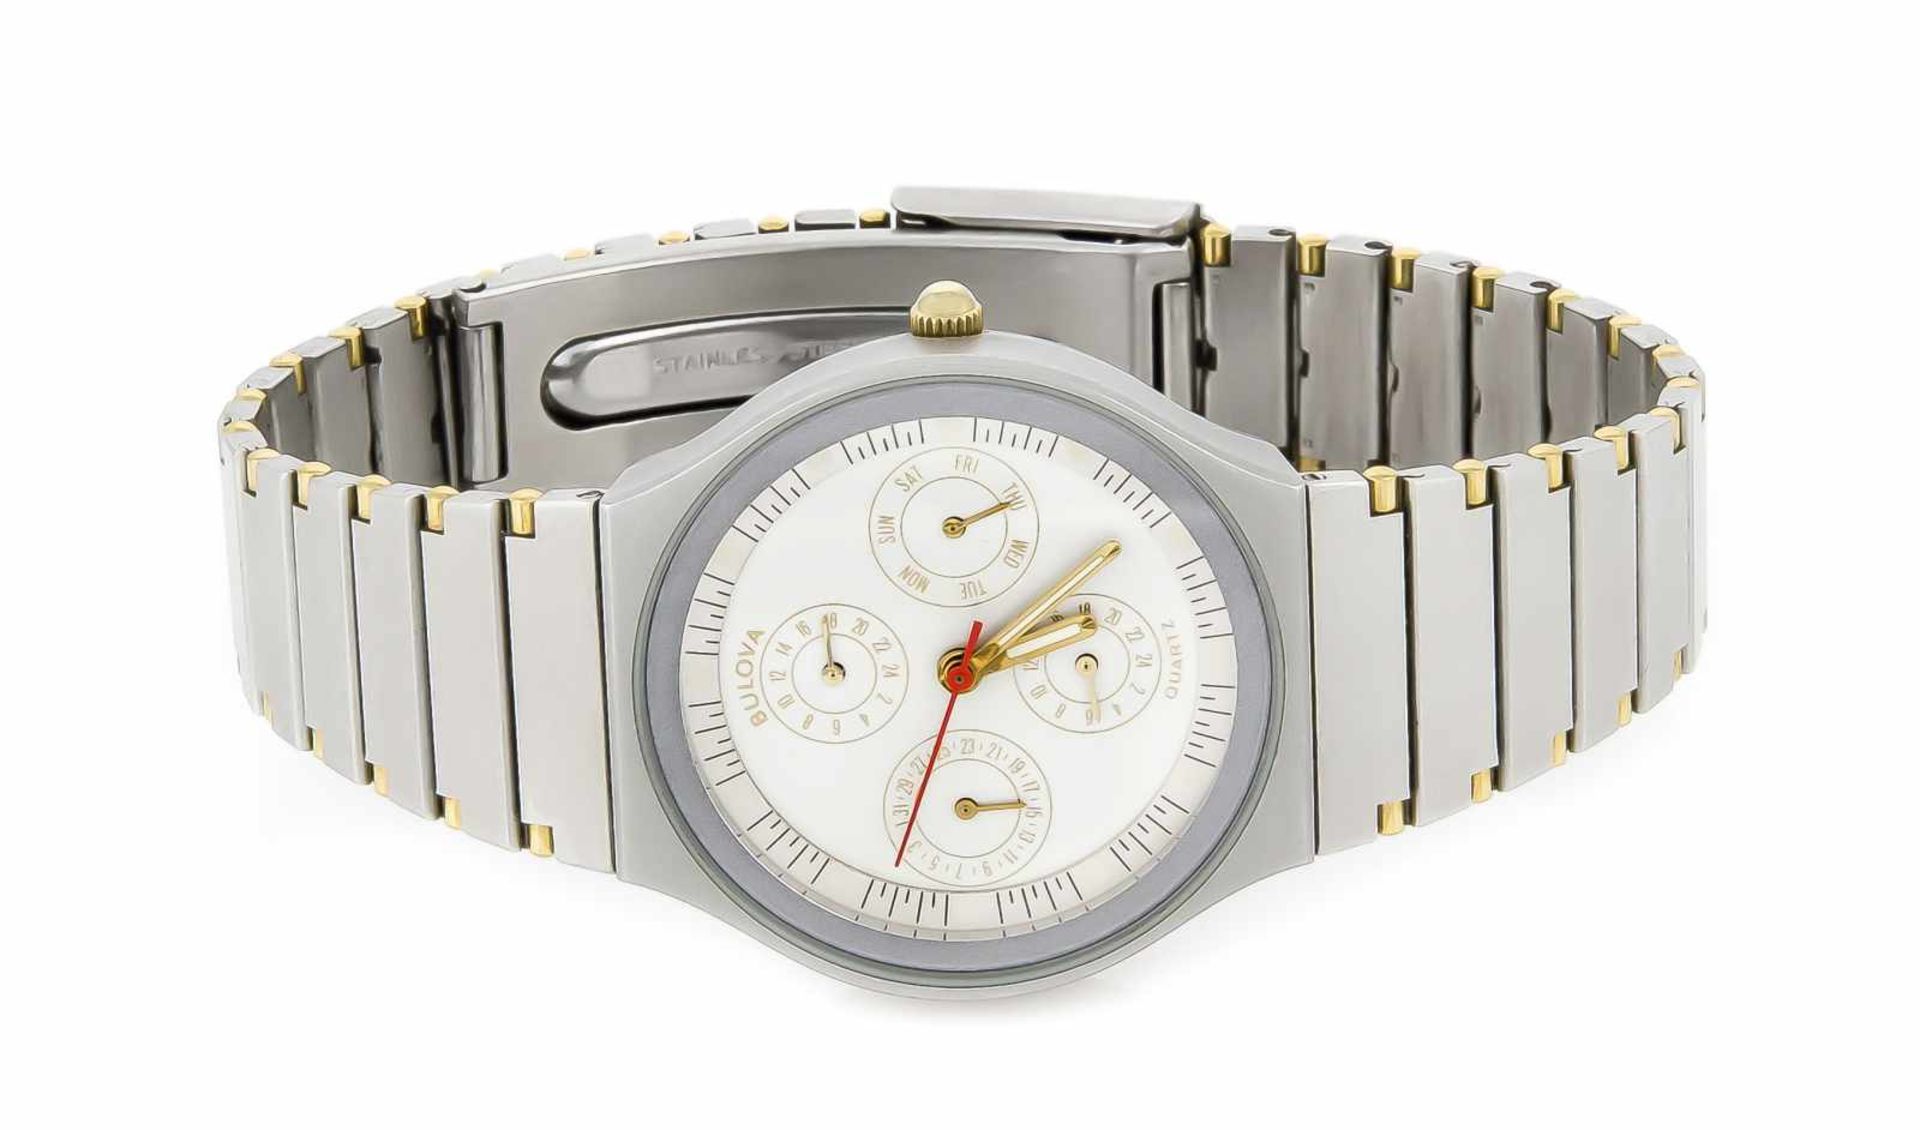 Bulova Uhr, Quarz, bicolor, mit Metallband und Faltschließe, weißes Zifferblatt mitBalken, - Bild 2 aus 3